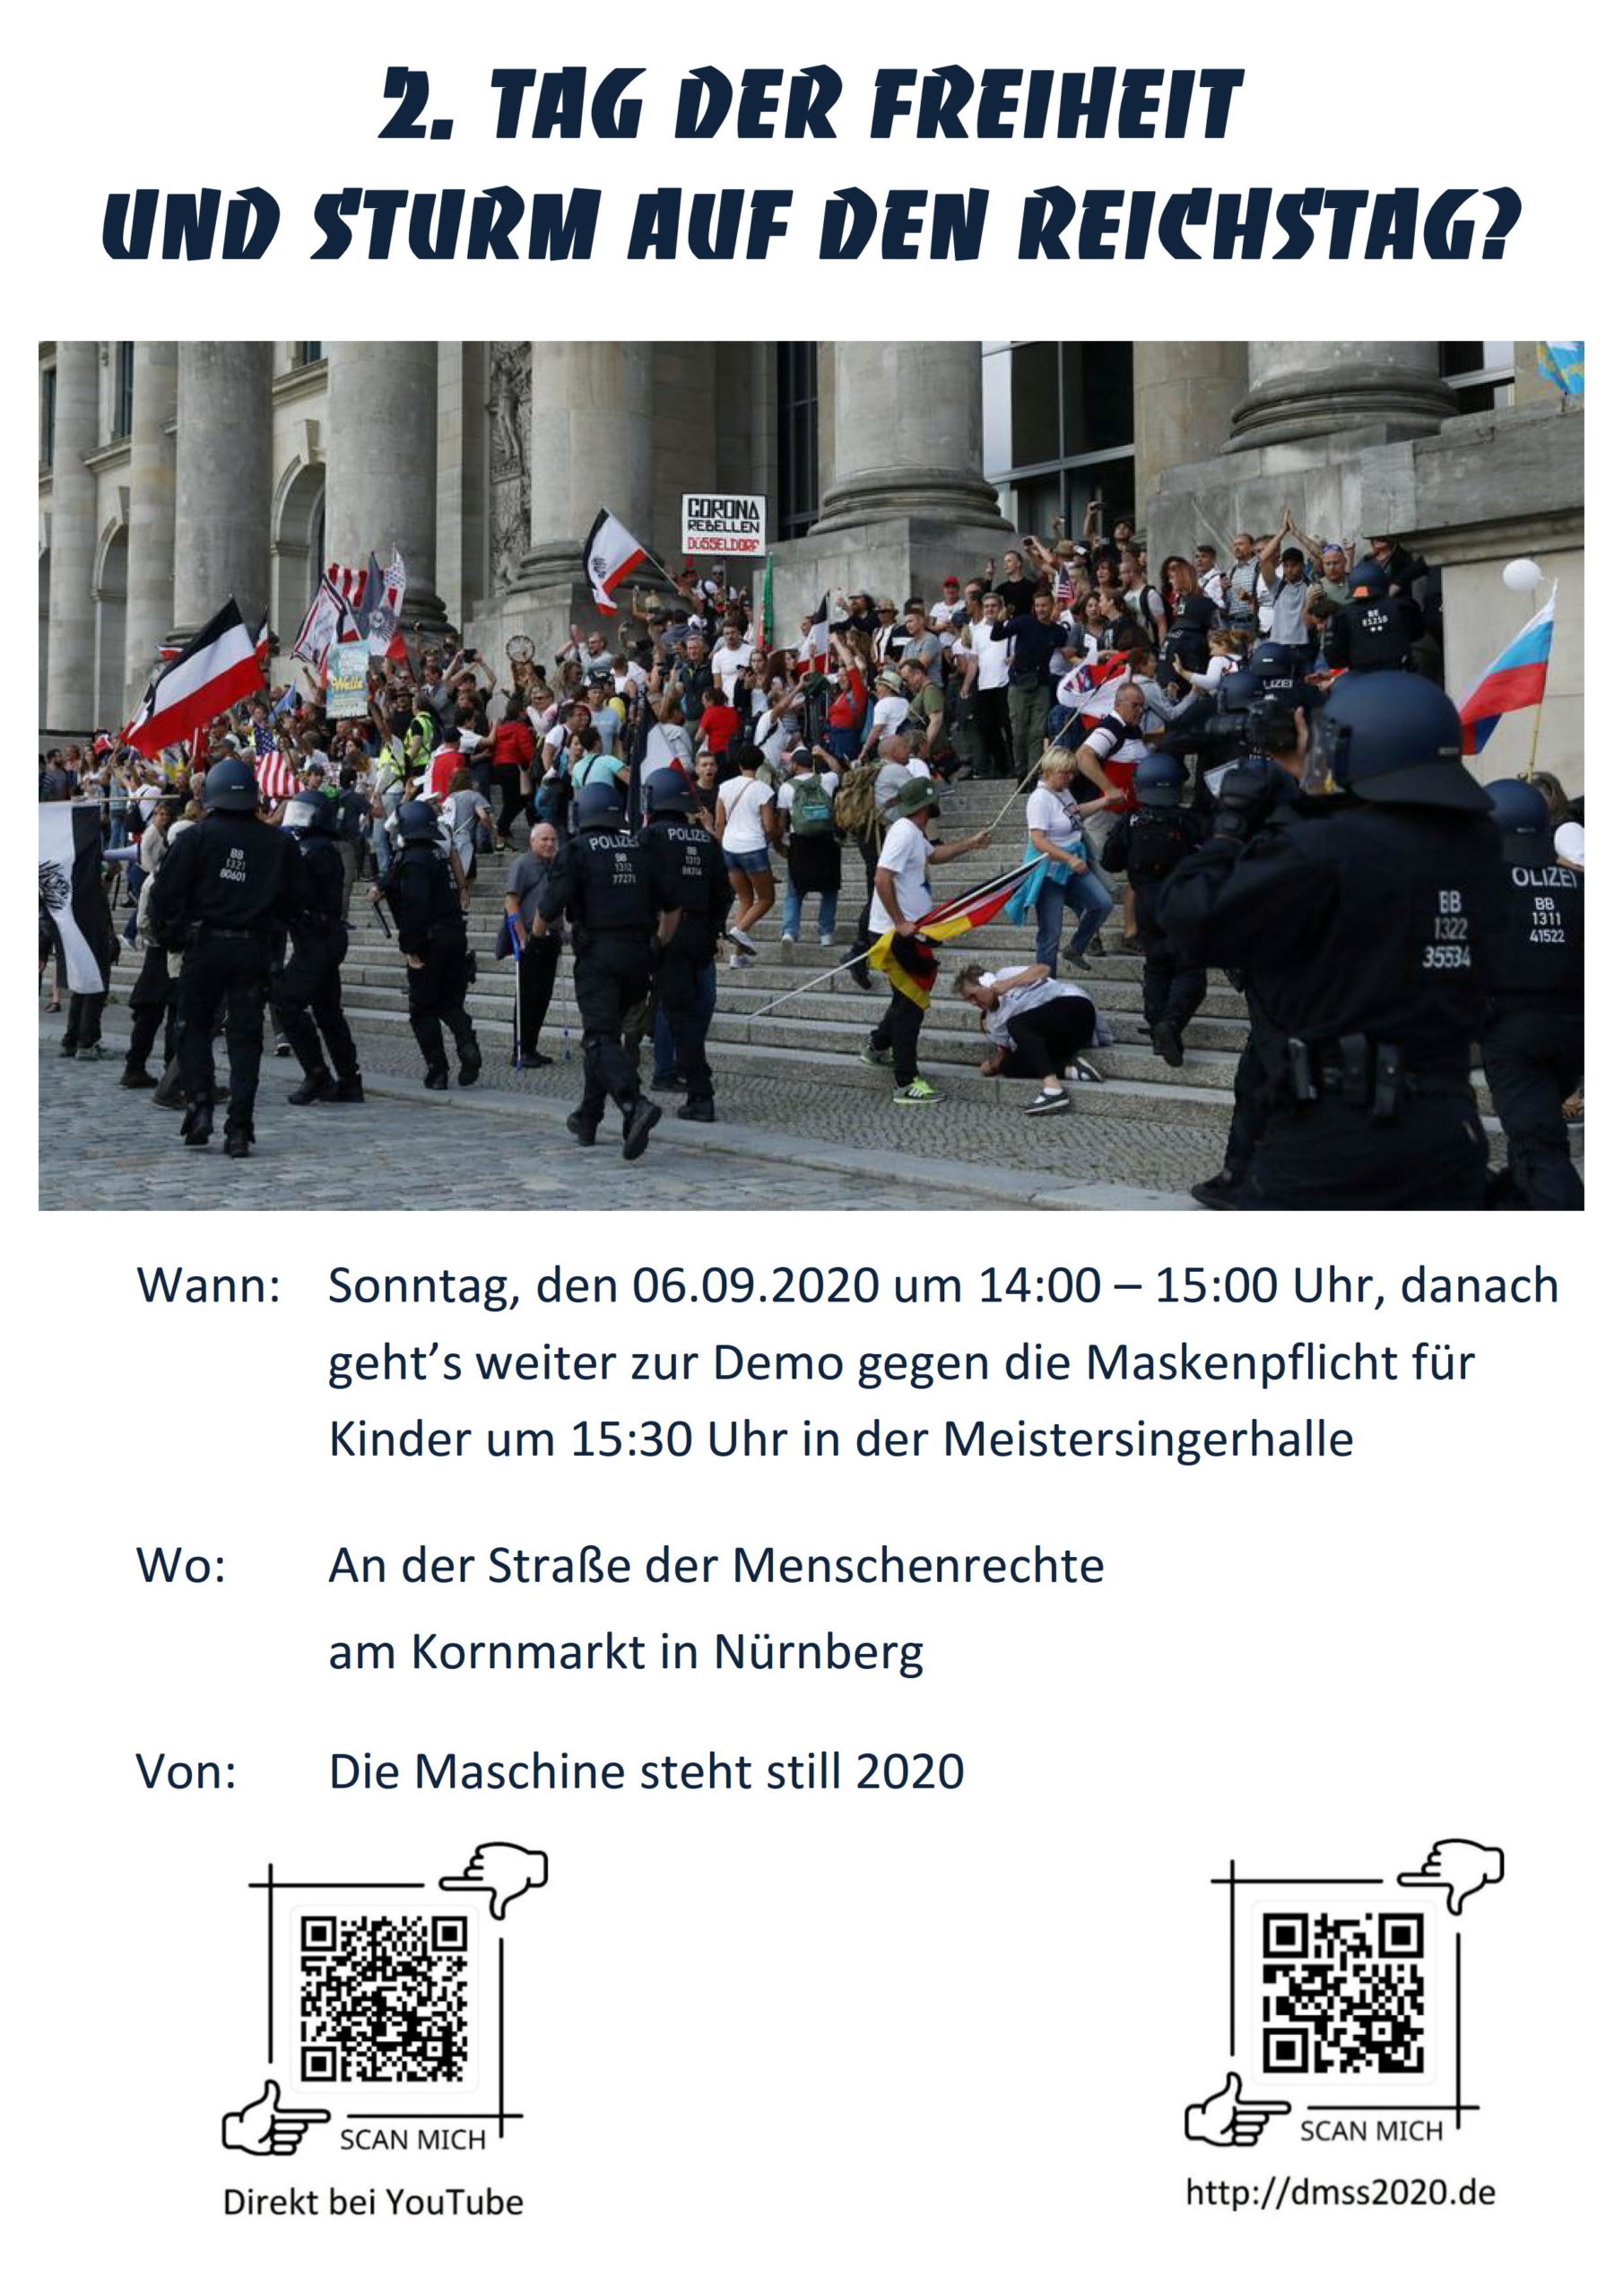 2. Tag der Freiheit und Sturm auf den Reichstag?